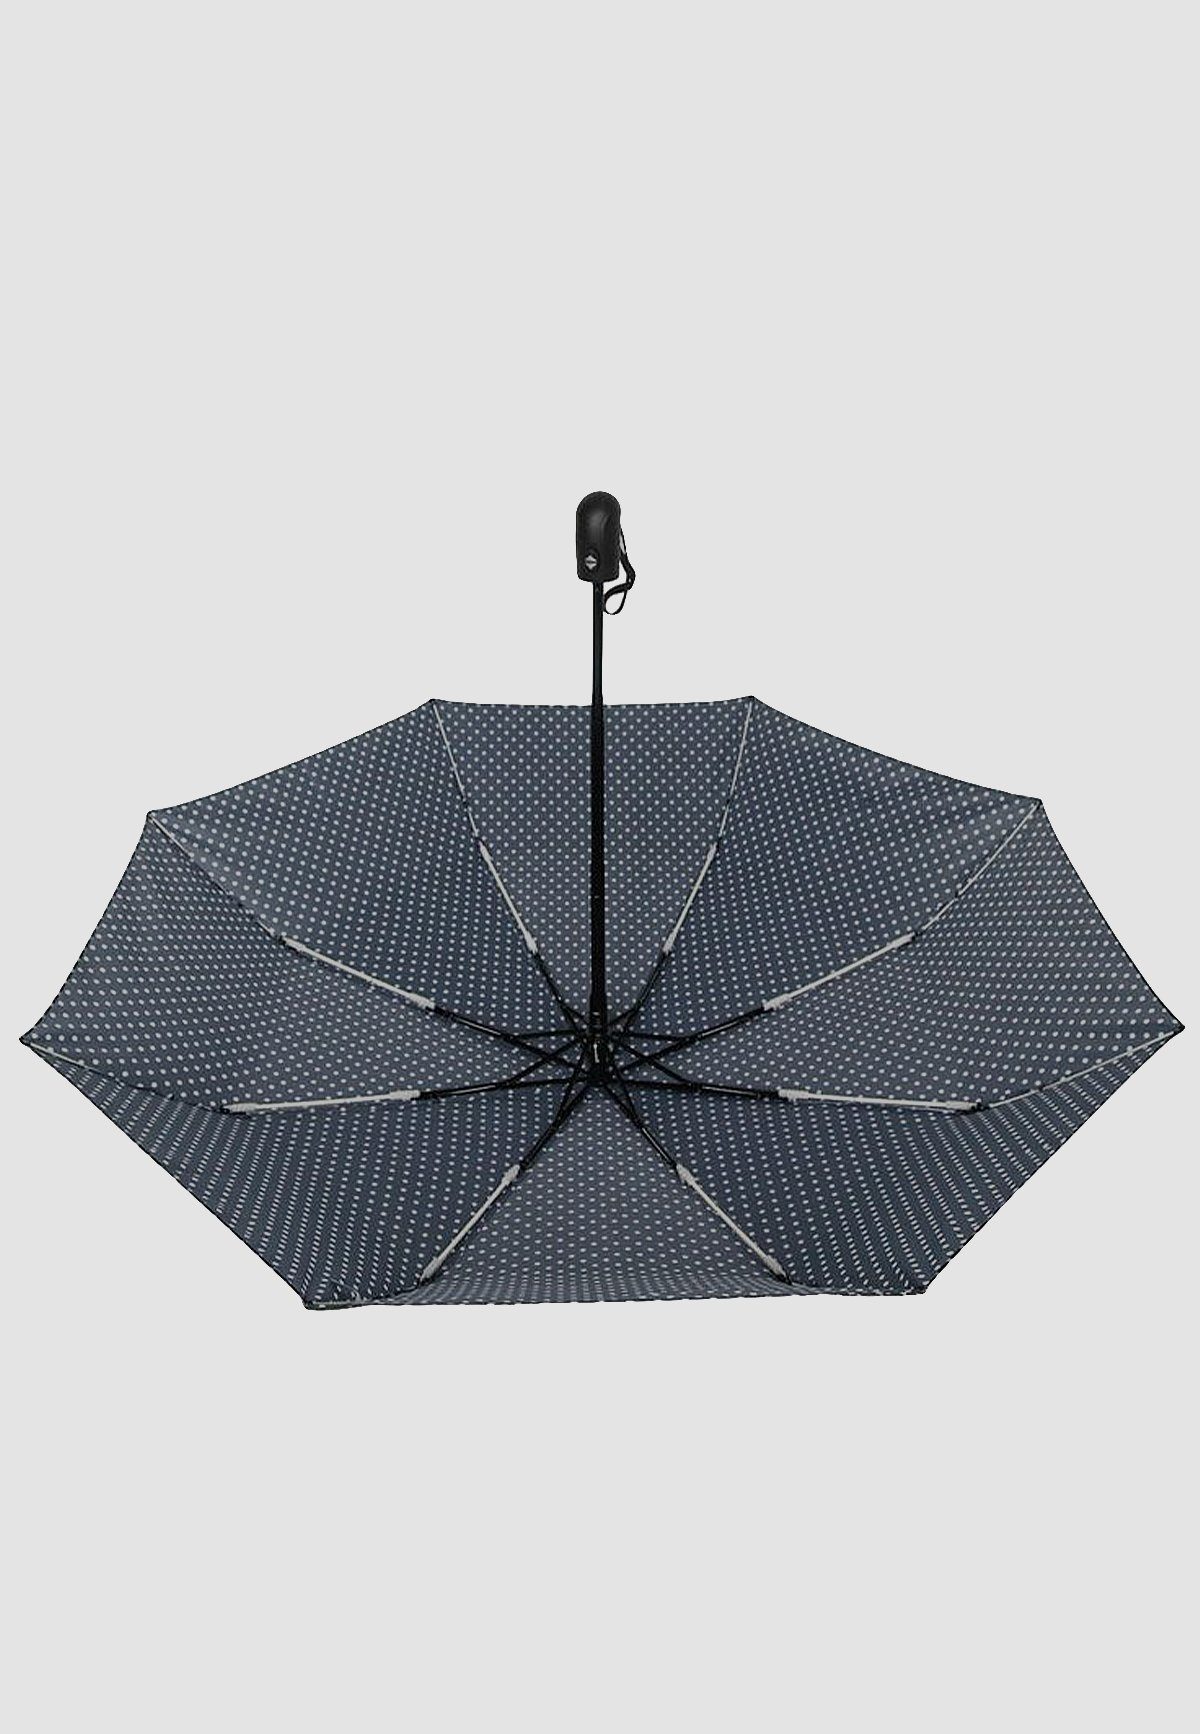 ANELY Taschenregenschirm Basic Regenschirm, in Automatik Navy 4686